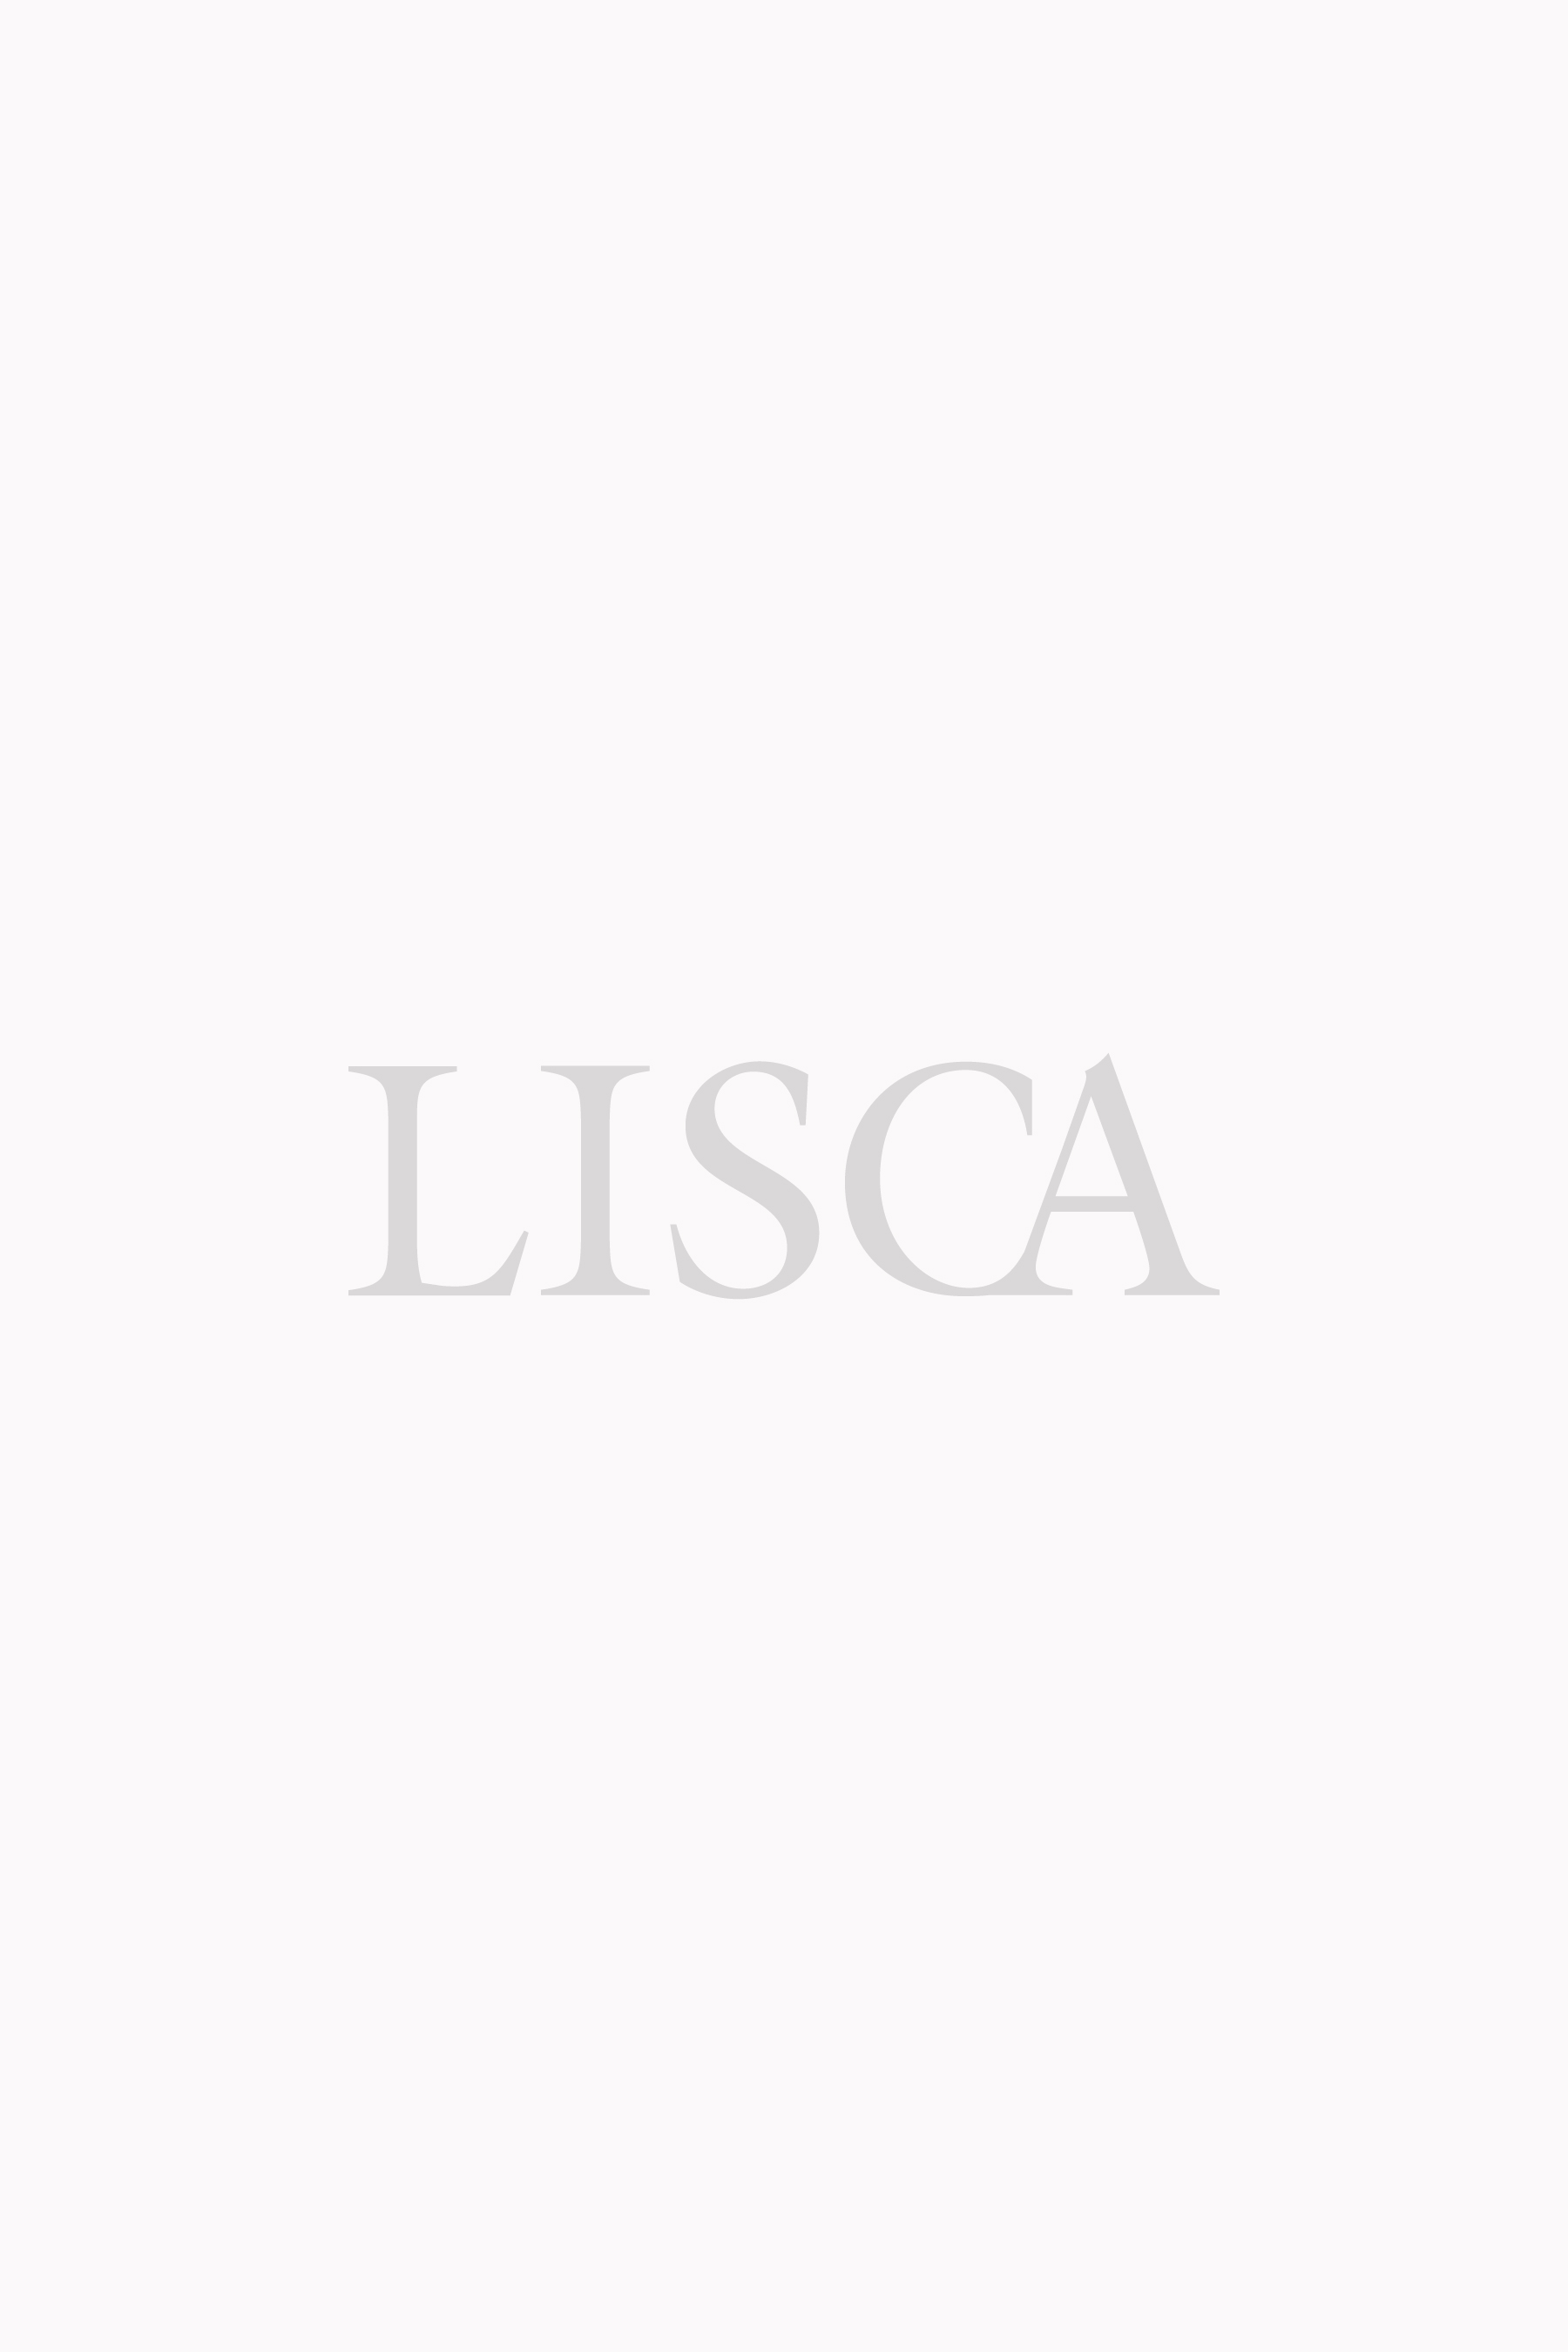 Plavková trojúhelníková podprsenka bez výztuže »Lima« 